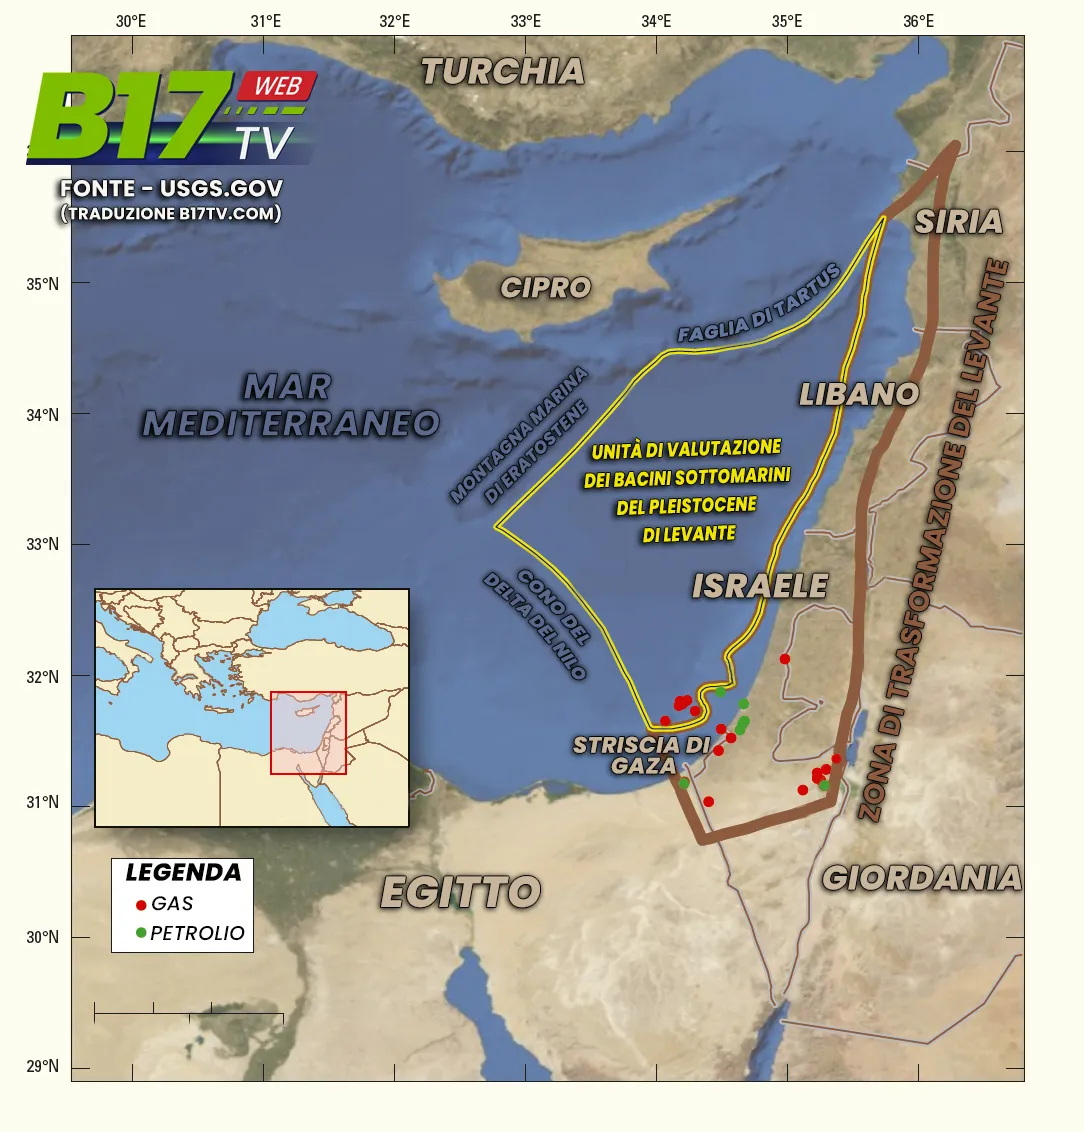 Ubicazione geografica delle unità di valutazione nella provincia del bacino del Levante nel Mediterraneo orientale.